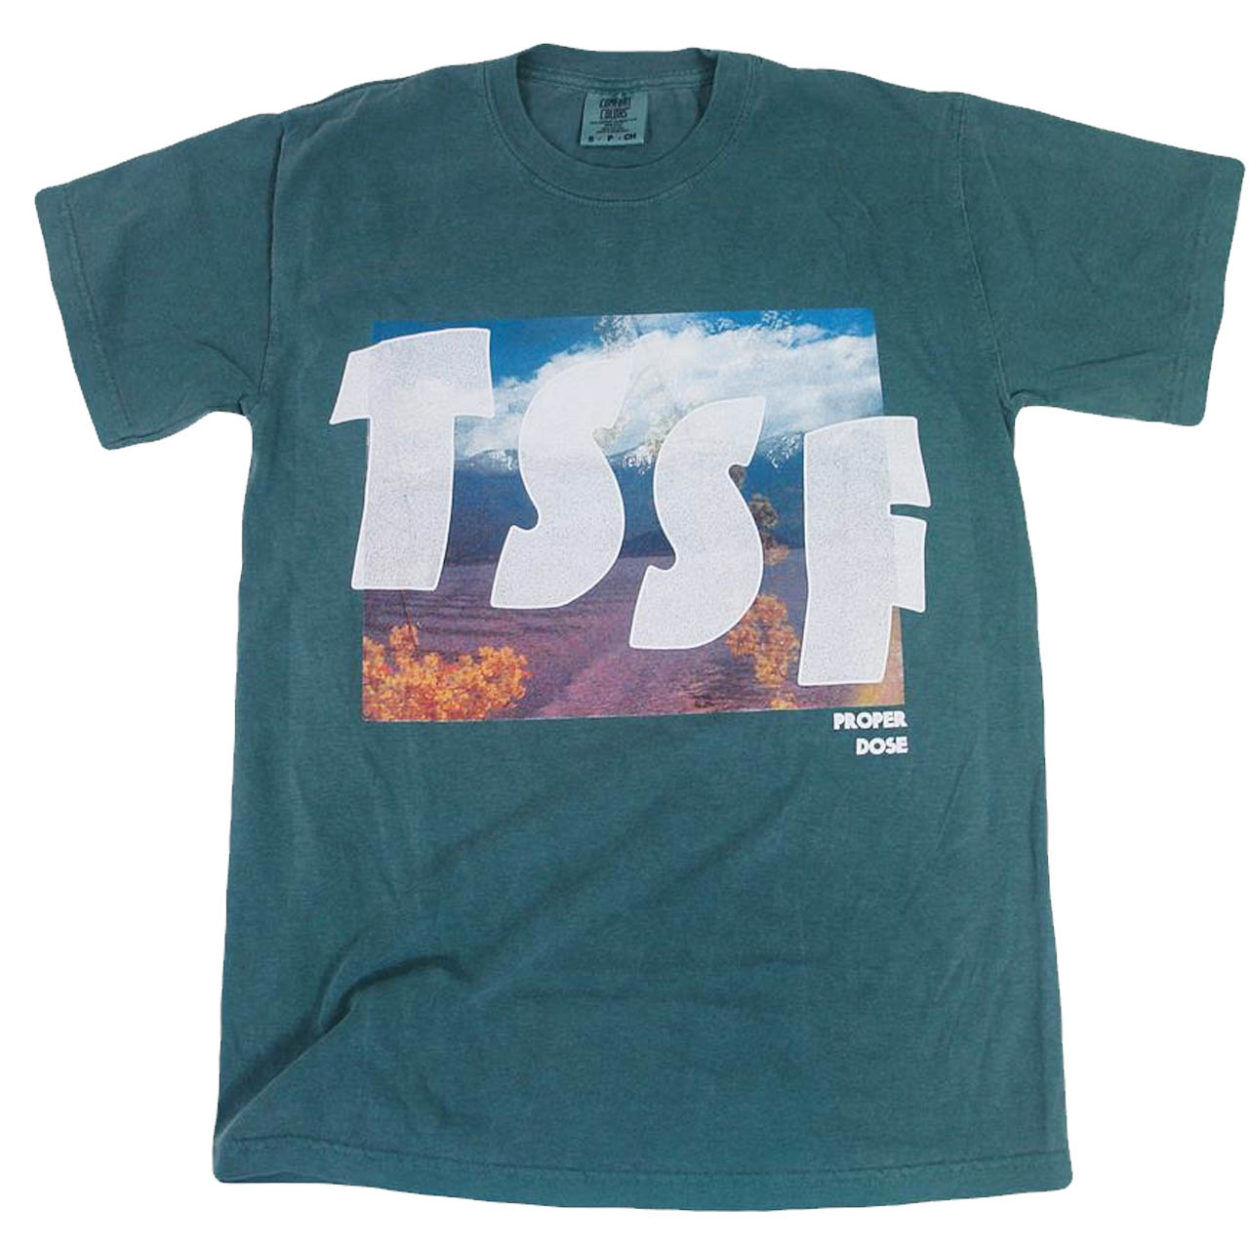 TSSF Properdose Artword Tshirt